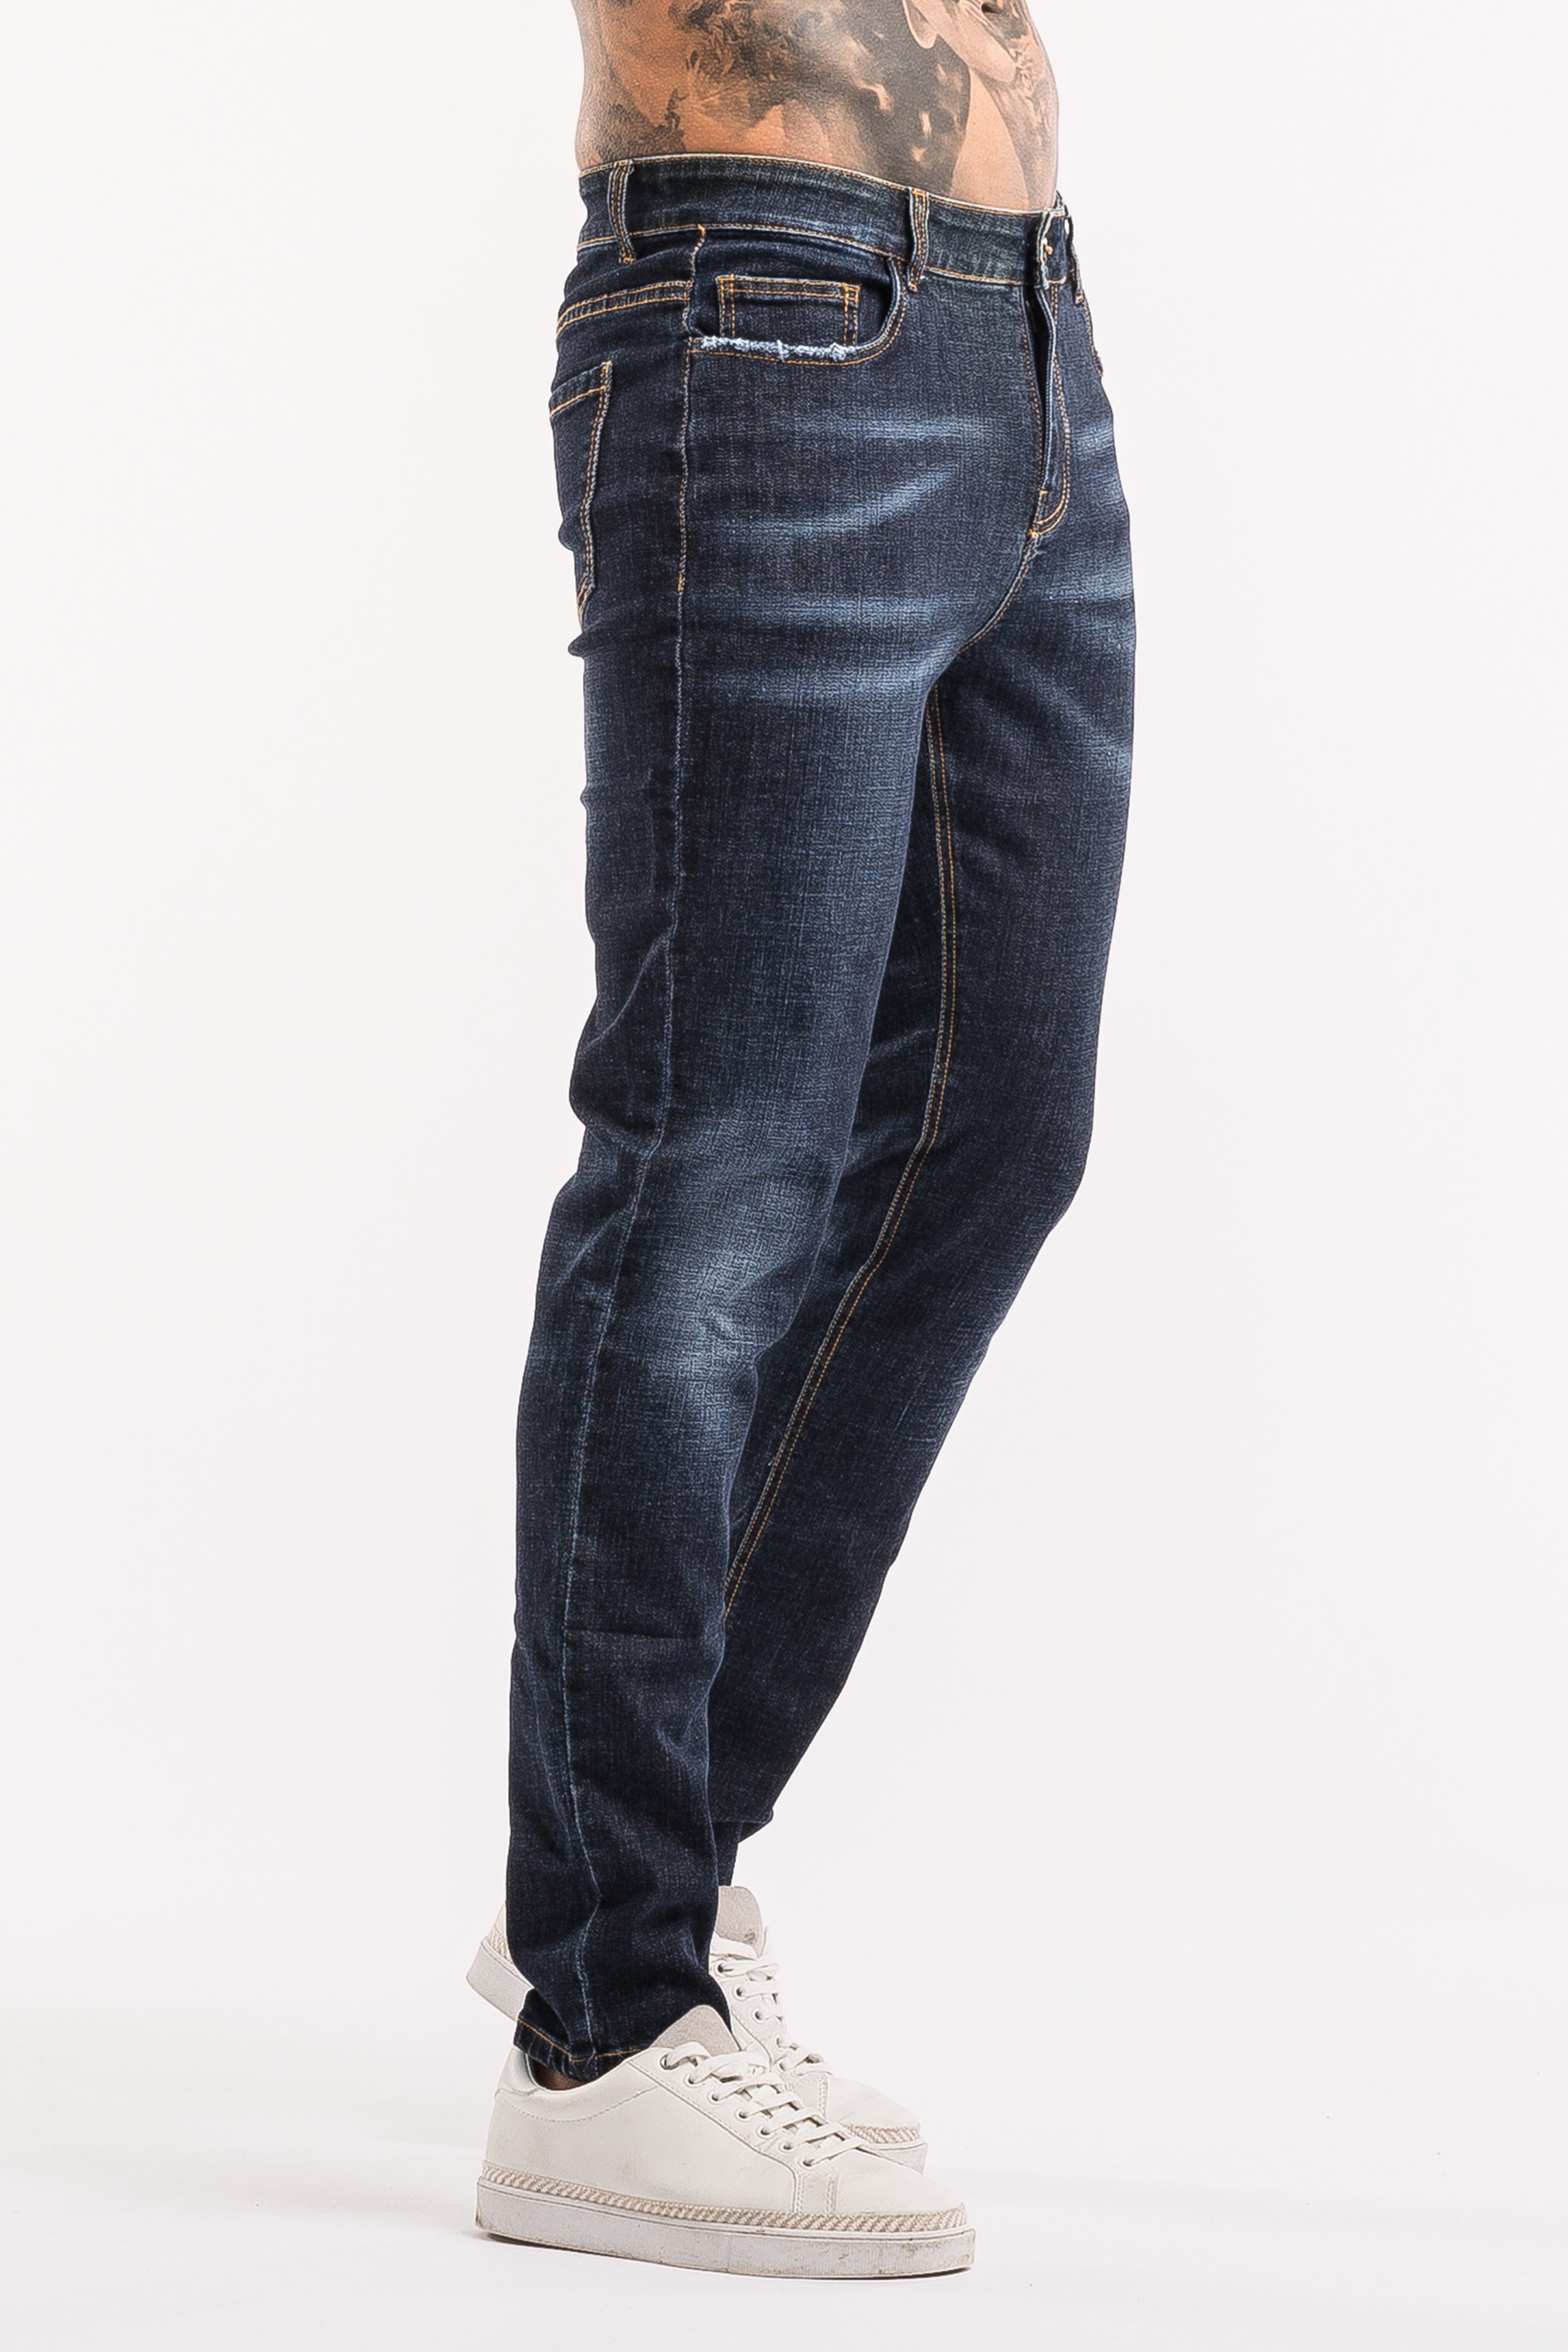 Slim Fit Essential Jeans - Dark Blue - SAINT JAXON